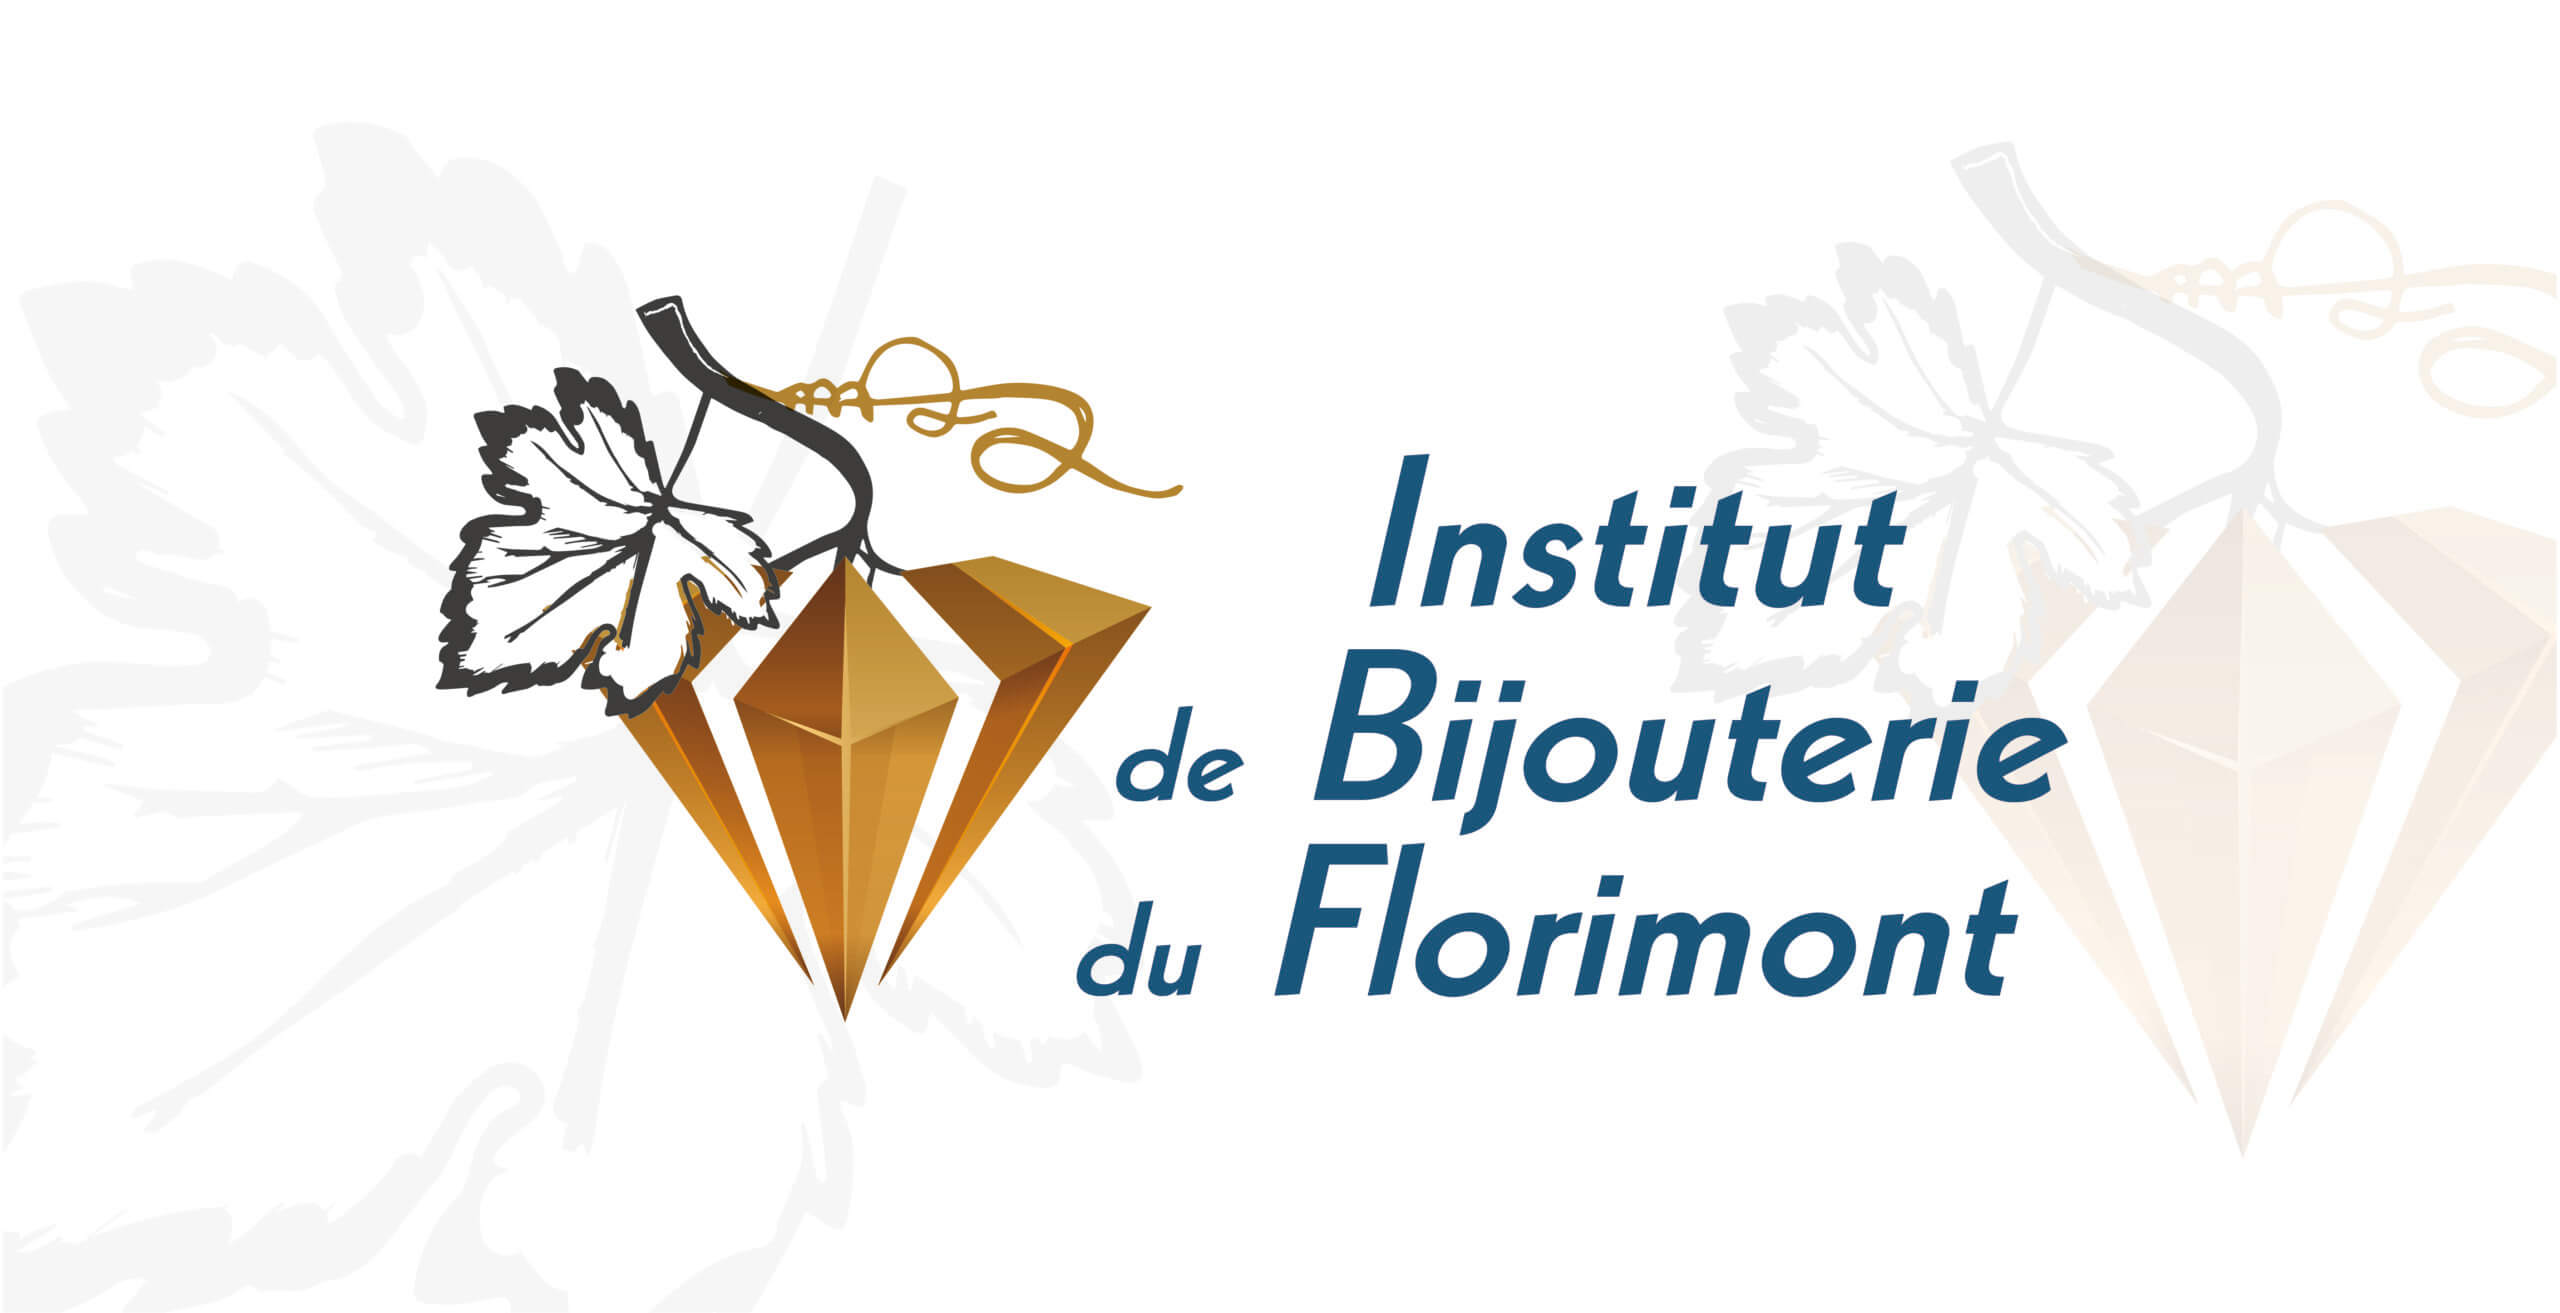 Présentation de l’Institut de Bijouterie du Florimont